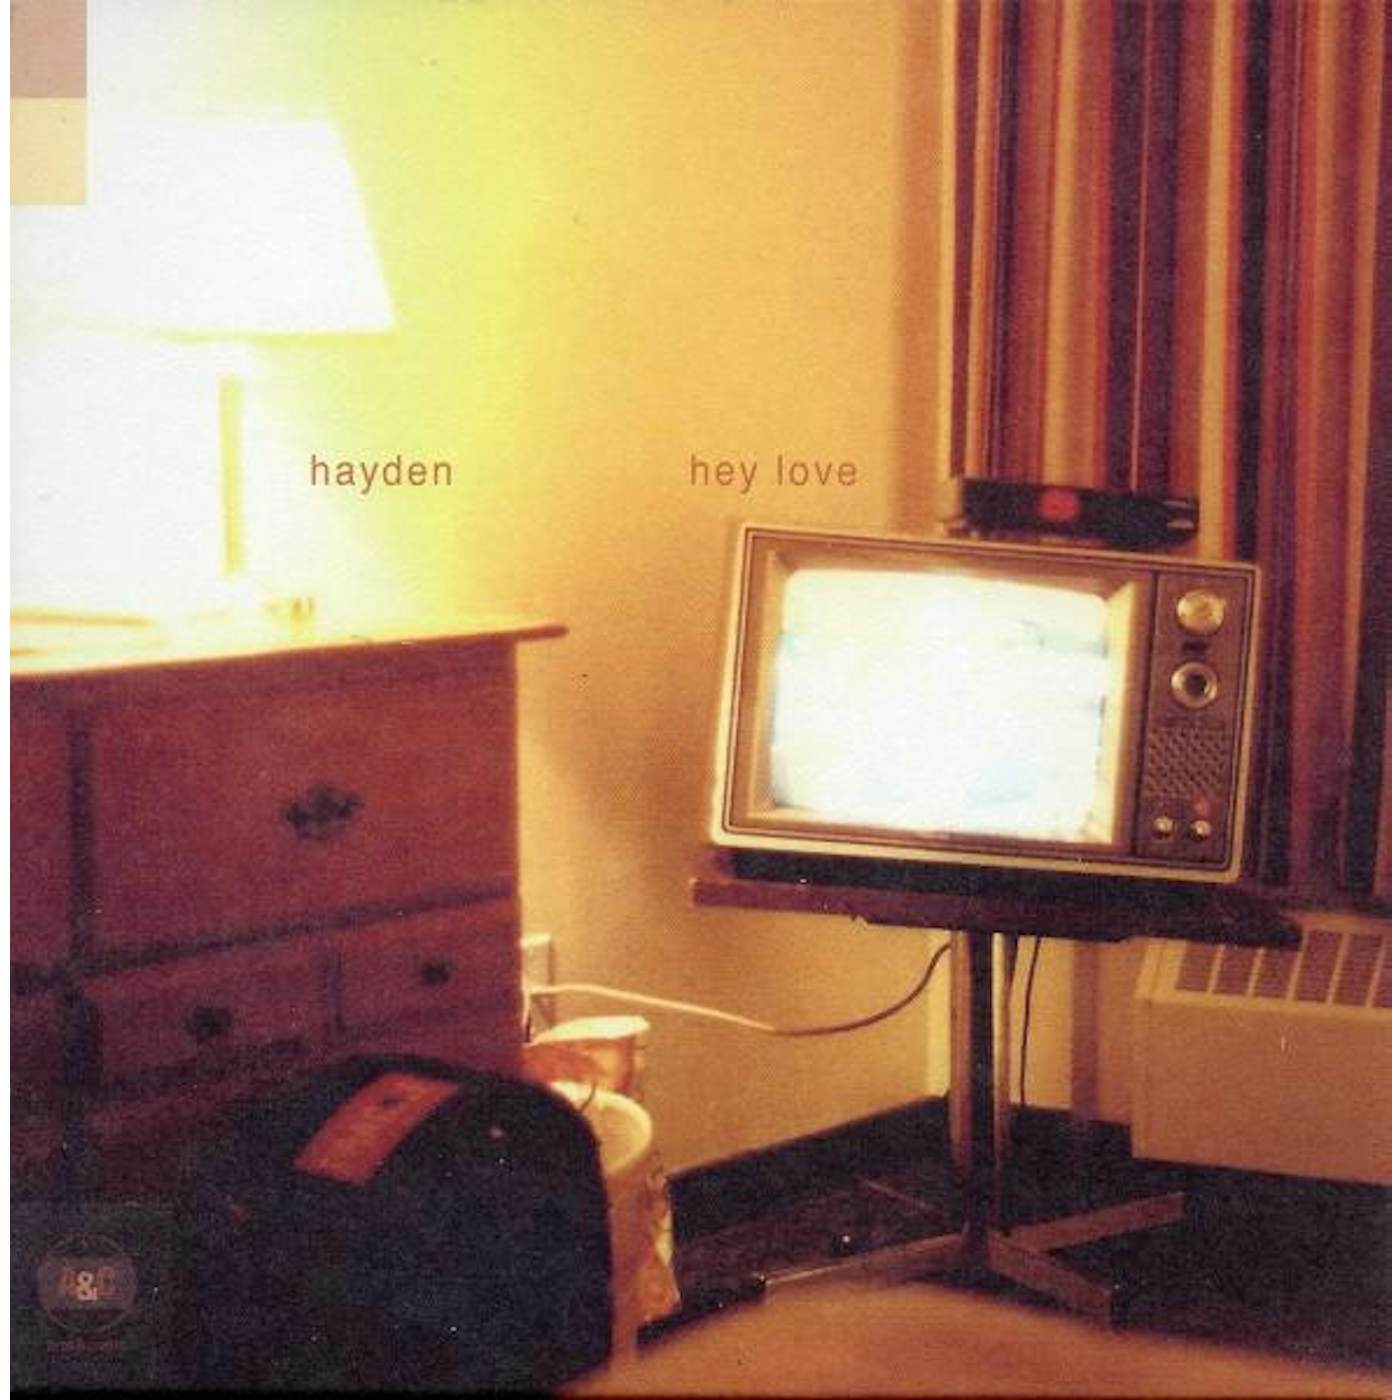 Hayden HEY LOVE CD